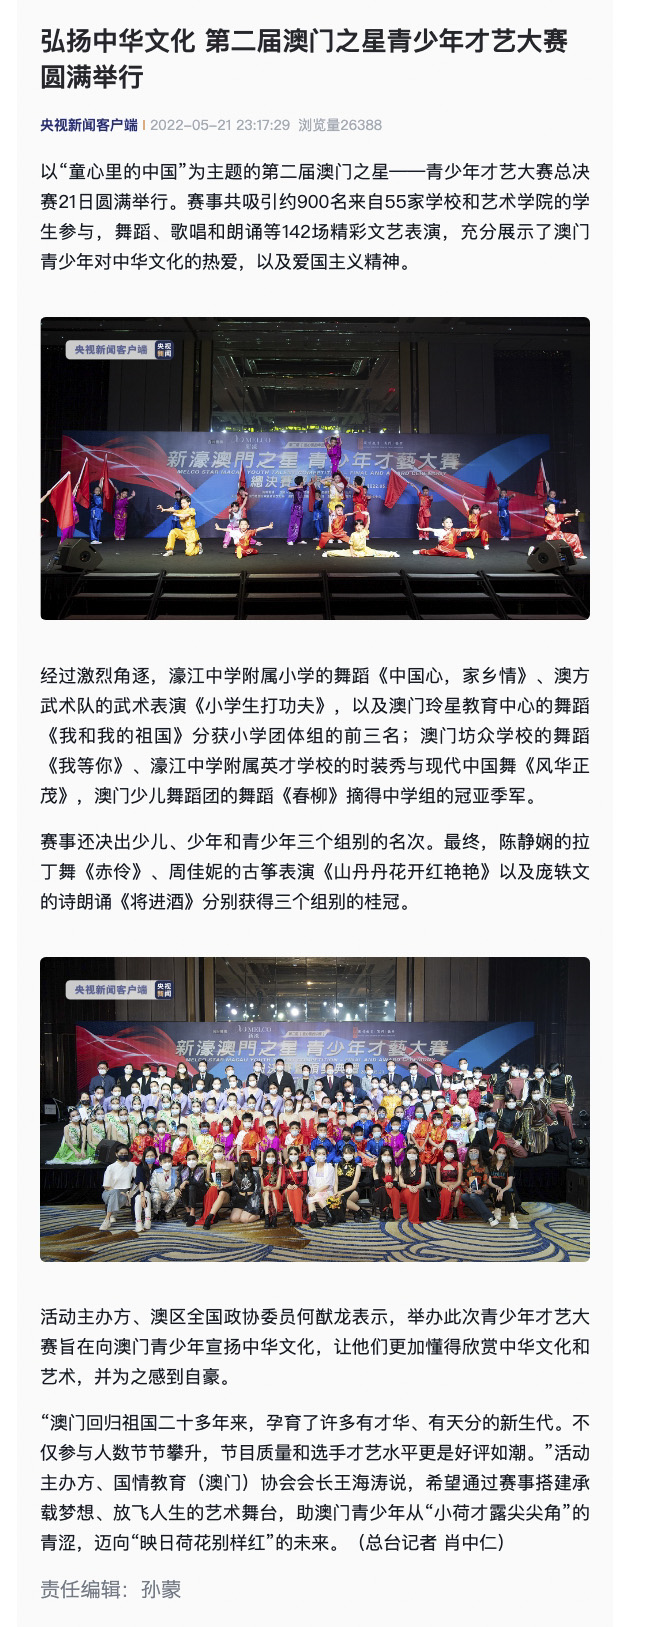 弘扬中华文化 第二届澳门之星青少年才艺大赛圆满举行-2 拷贝.jpg